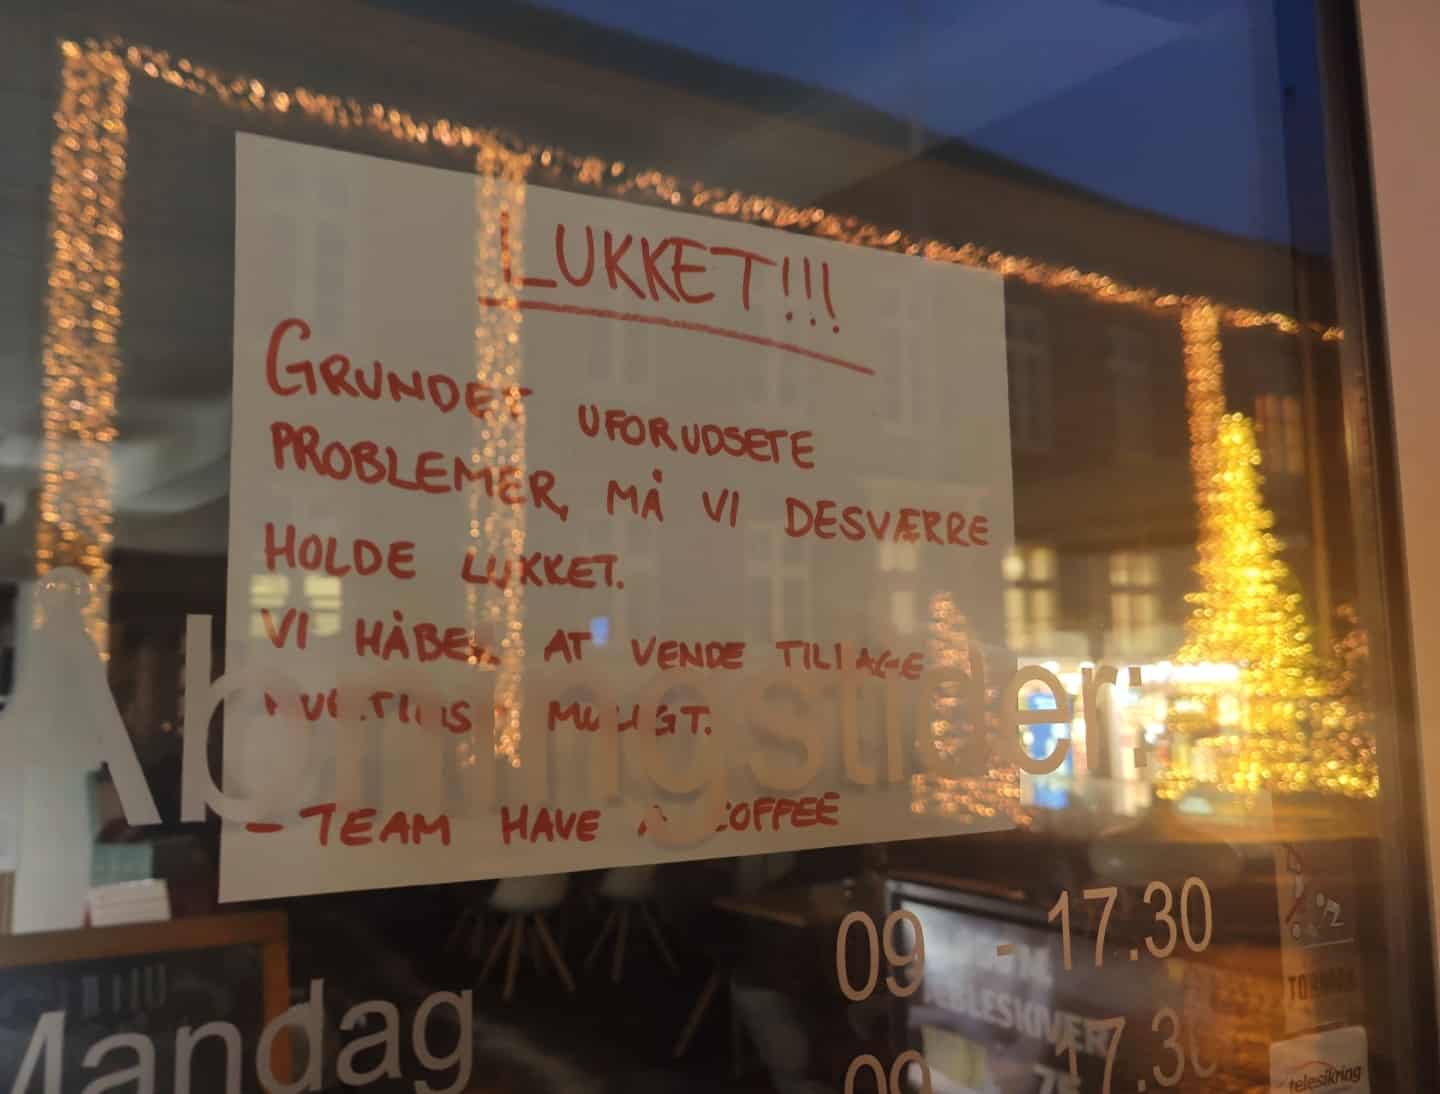 Kaffebar på tre knallerthjul - Sjællandske Nyheder